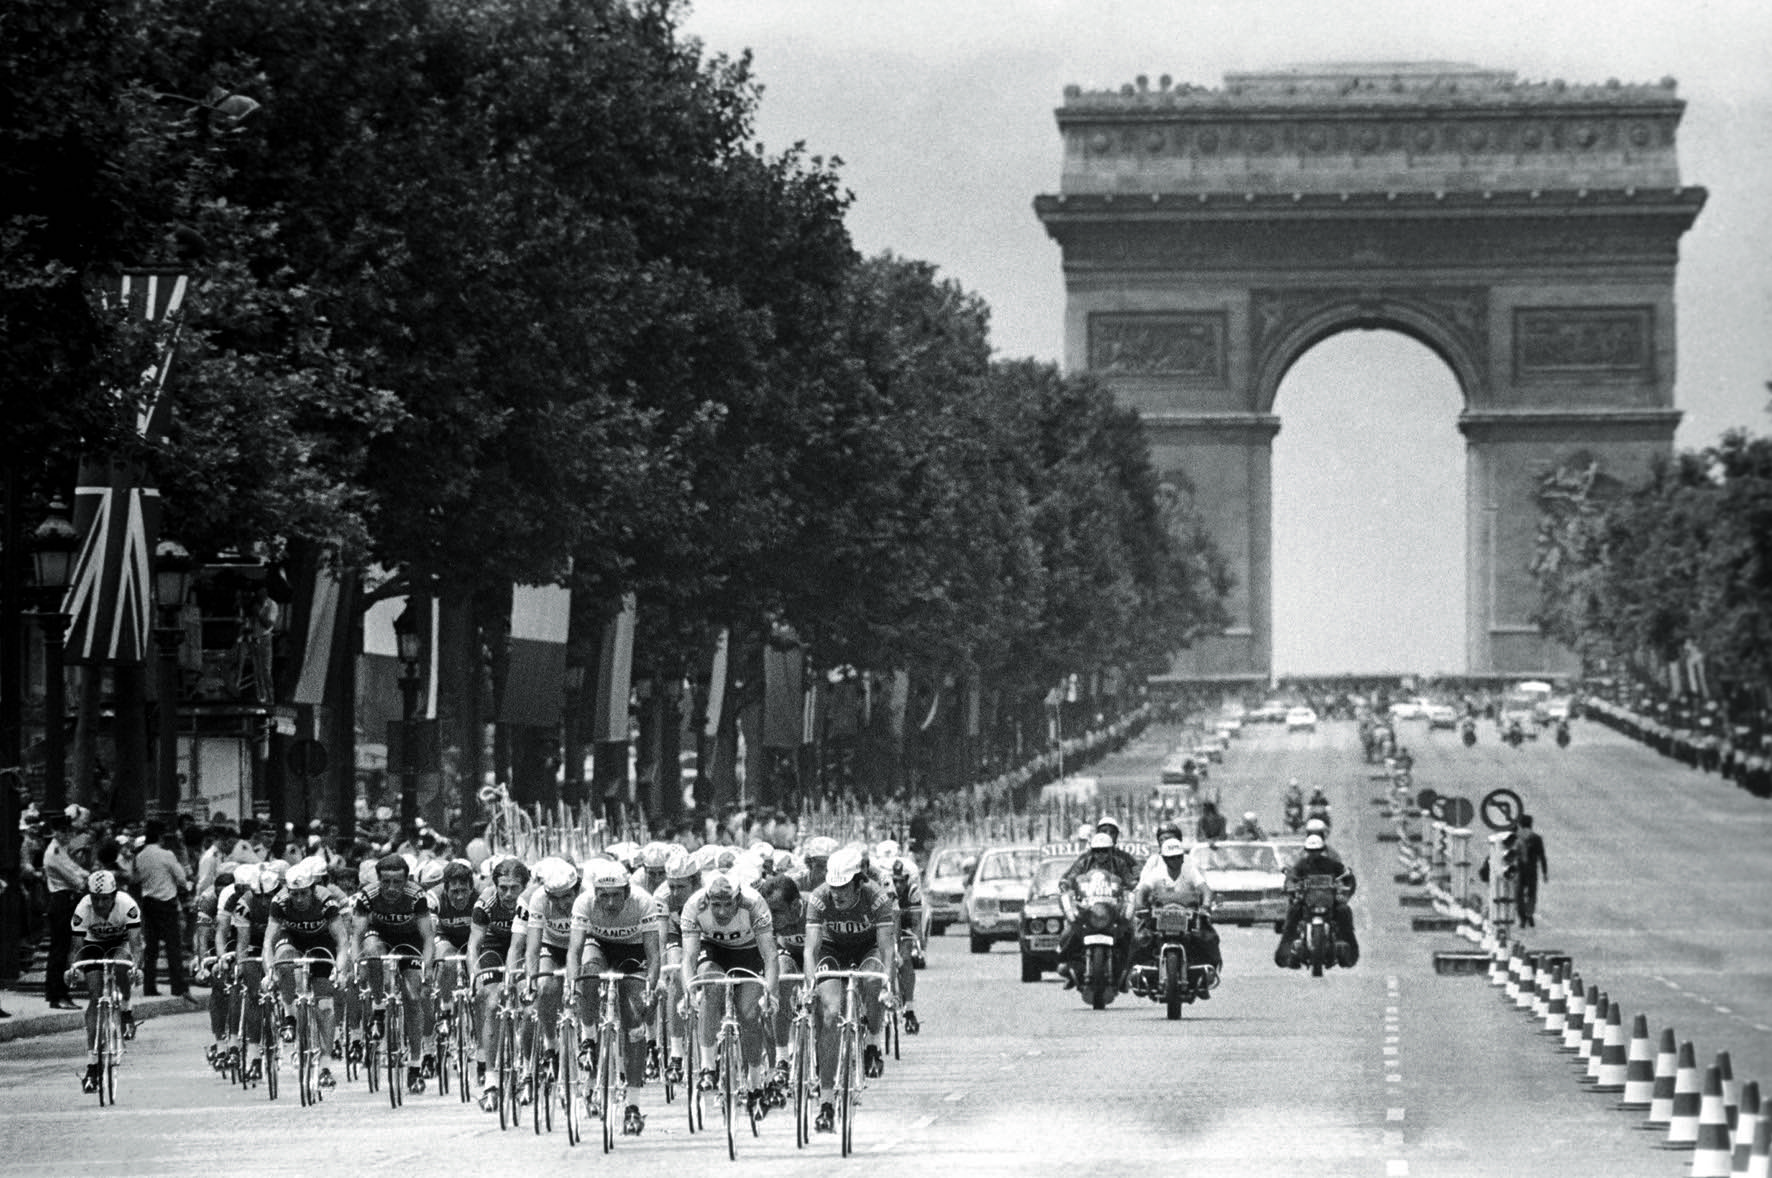 Buchtipp: Tour de France The Golden Age 1940s-1970s